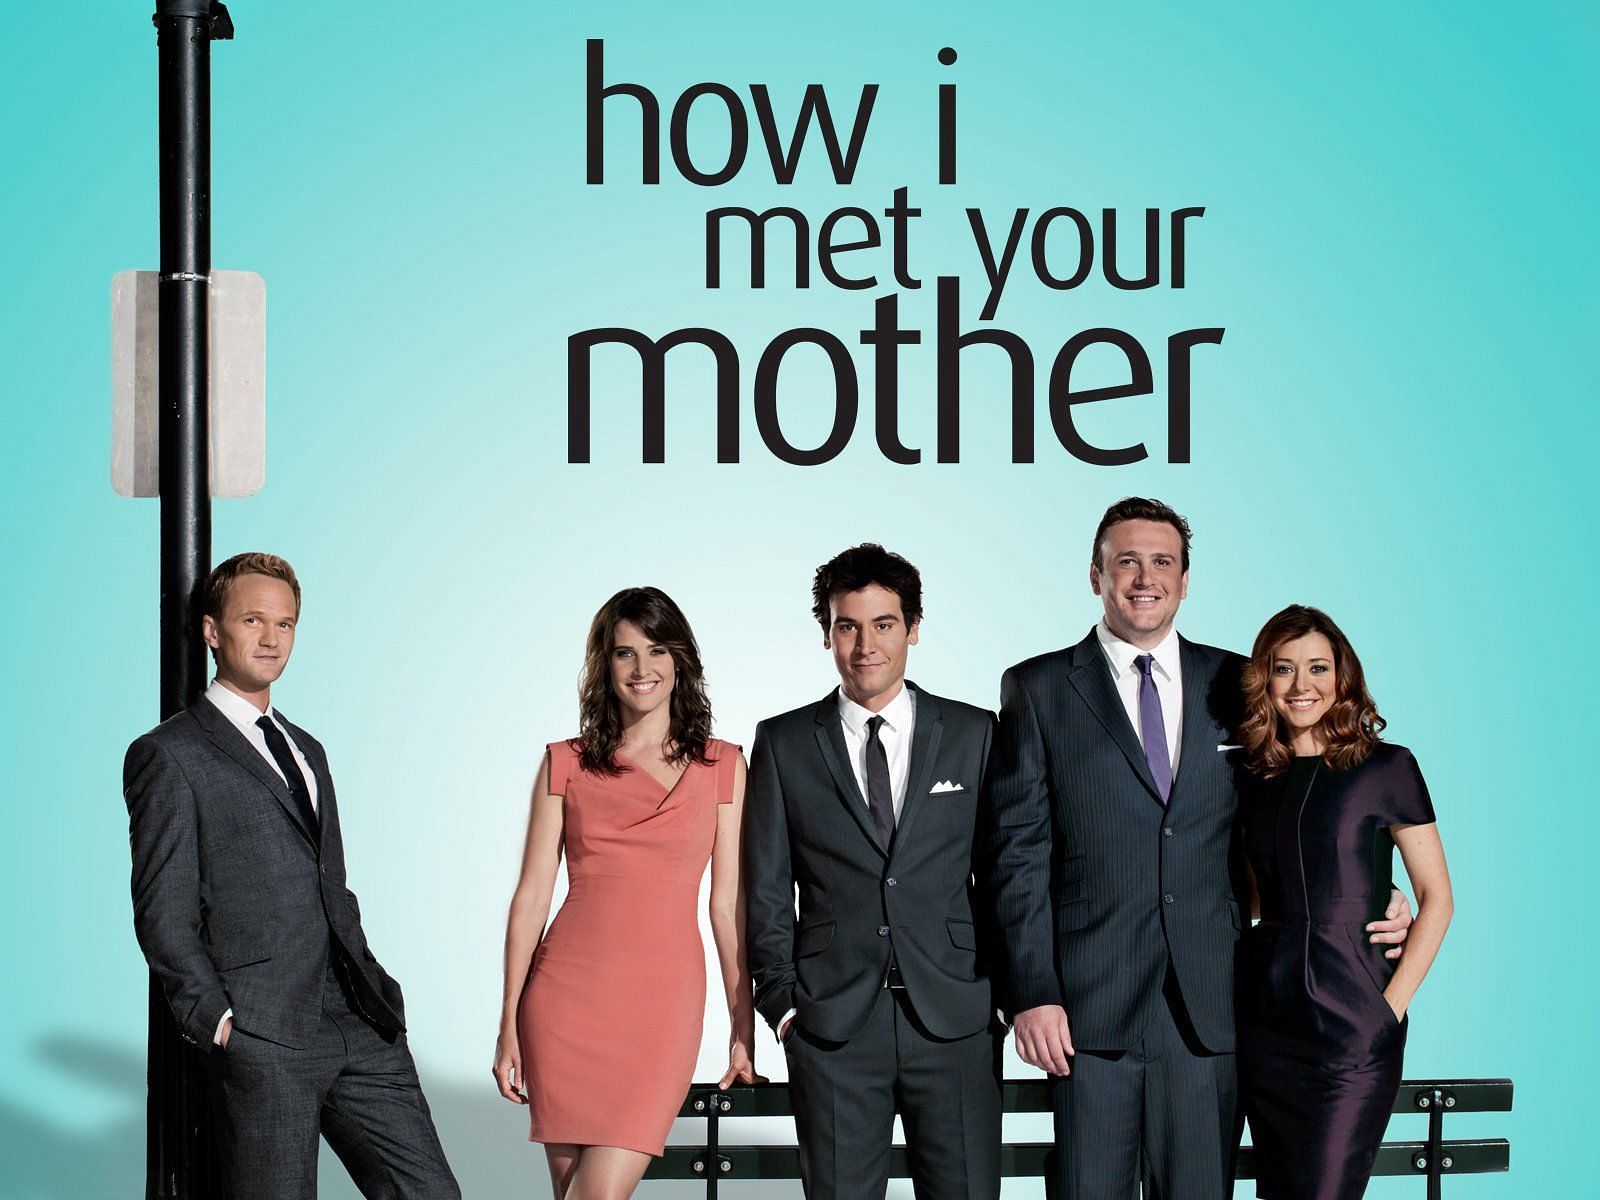 How I Met Your Mother (Image via CBS)